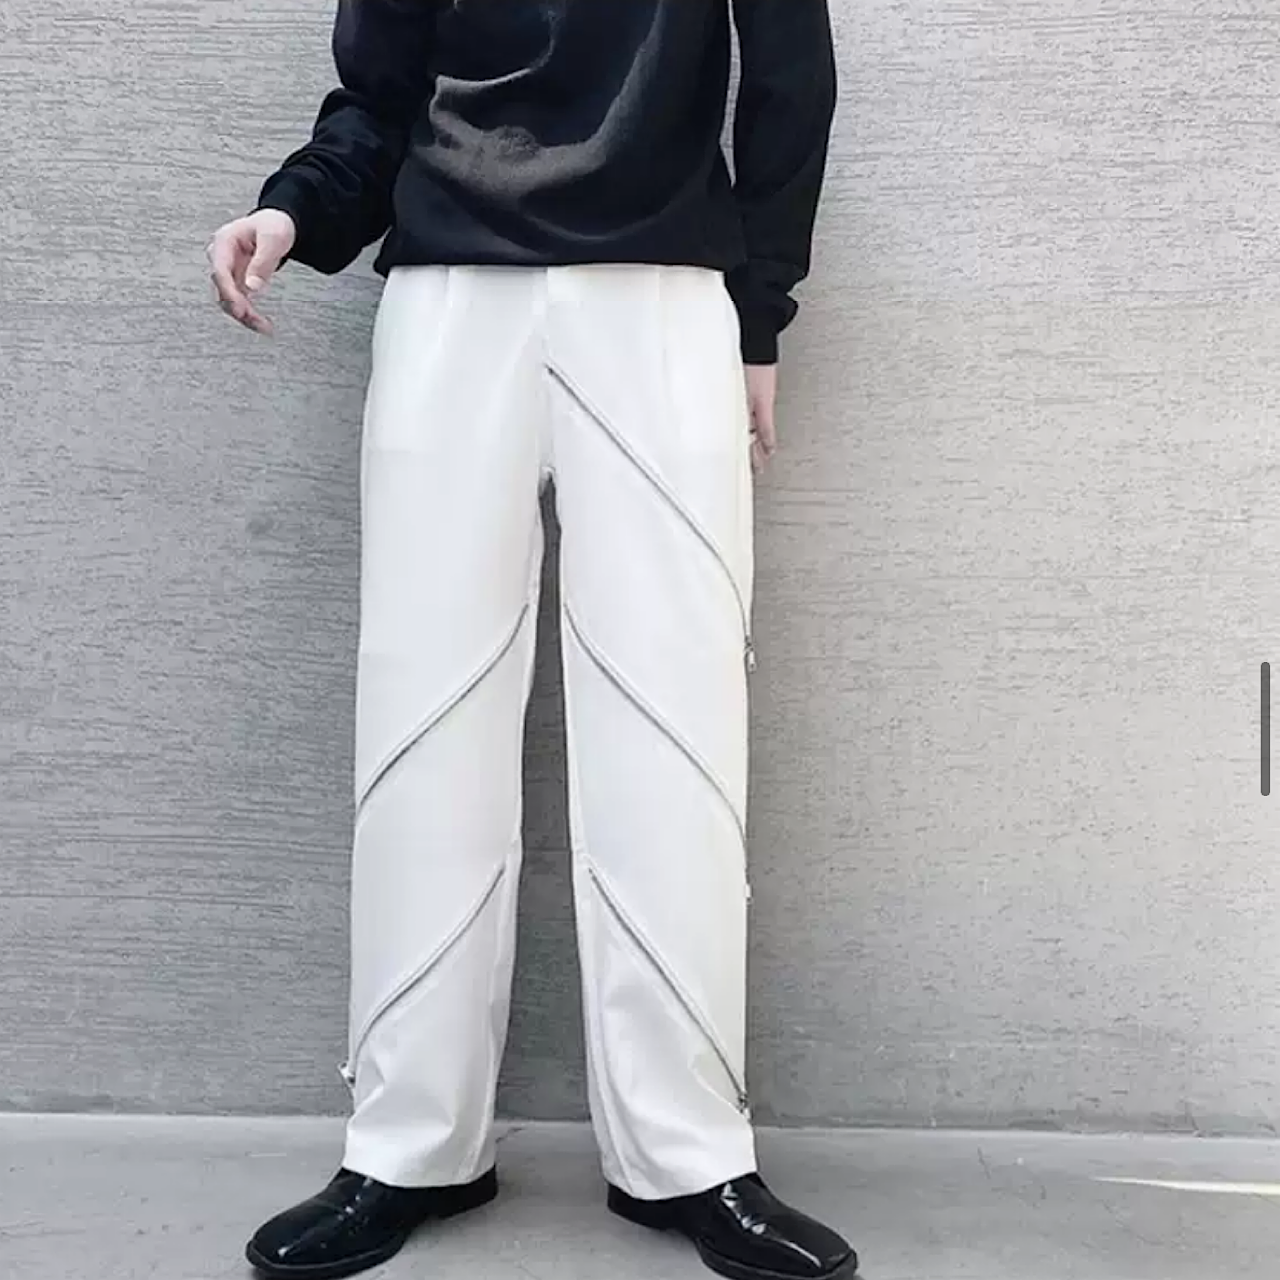 Unique design zip pants HL1518